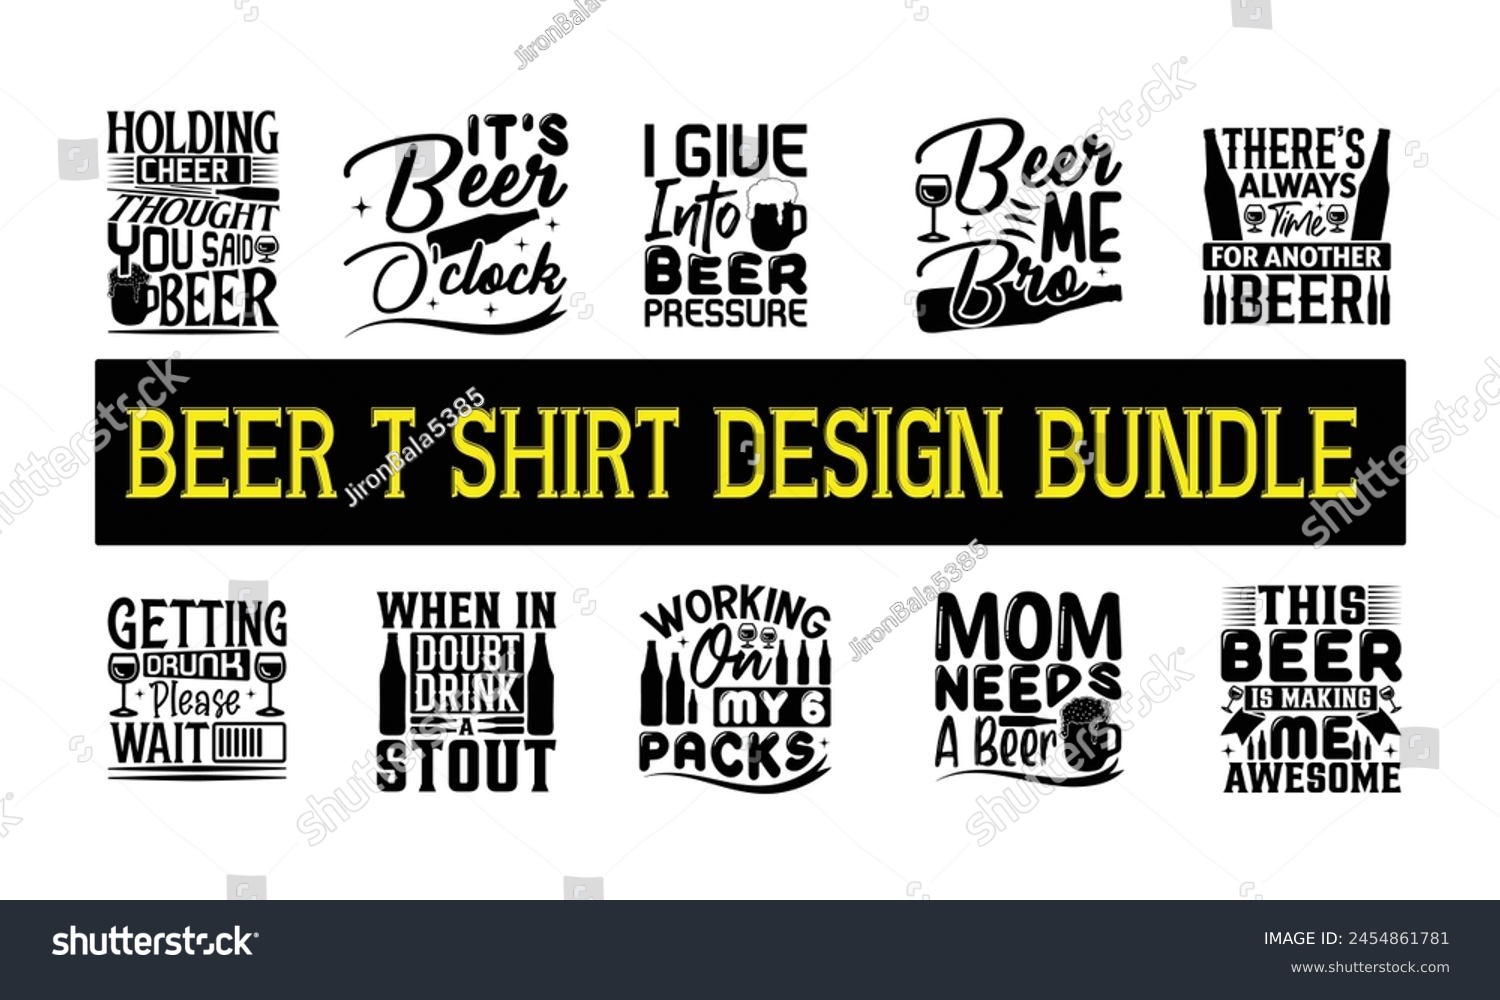 SVG of Beer T shirt Design BUNDIL 0022 , Vector illustration, Eps, Dxf, Png, Instant Download, beer T-shirt  Bundil. svg